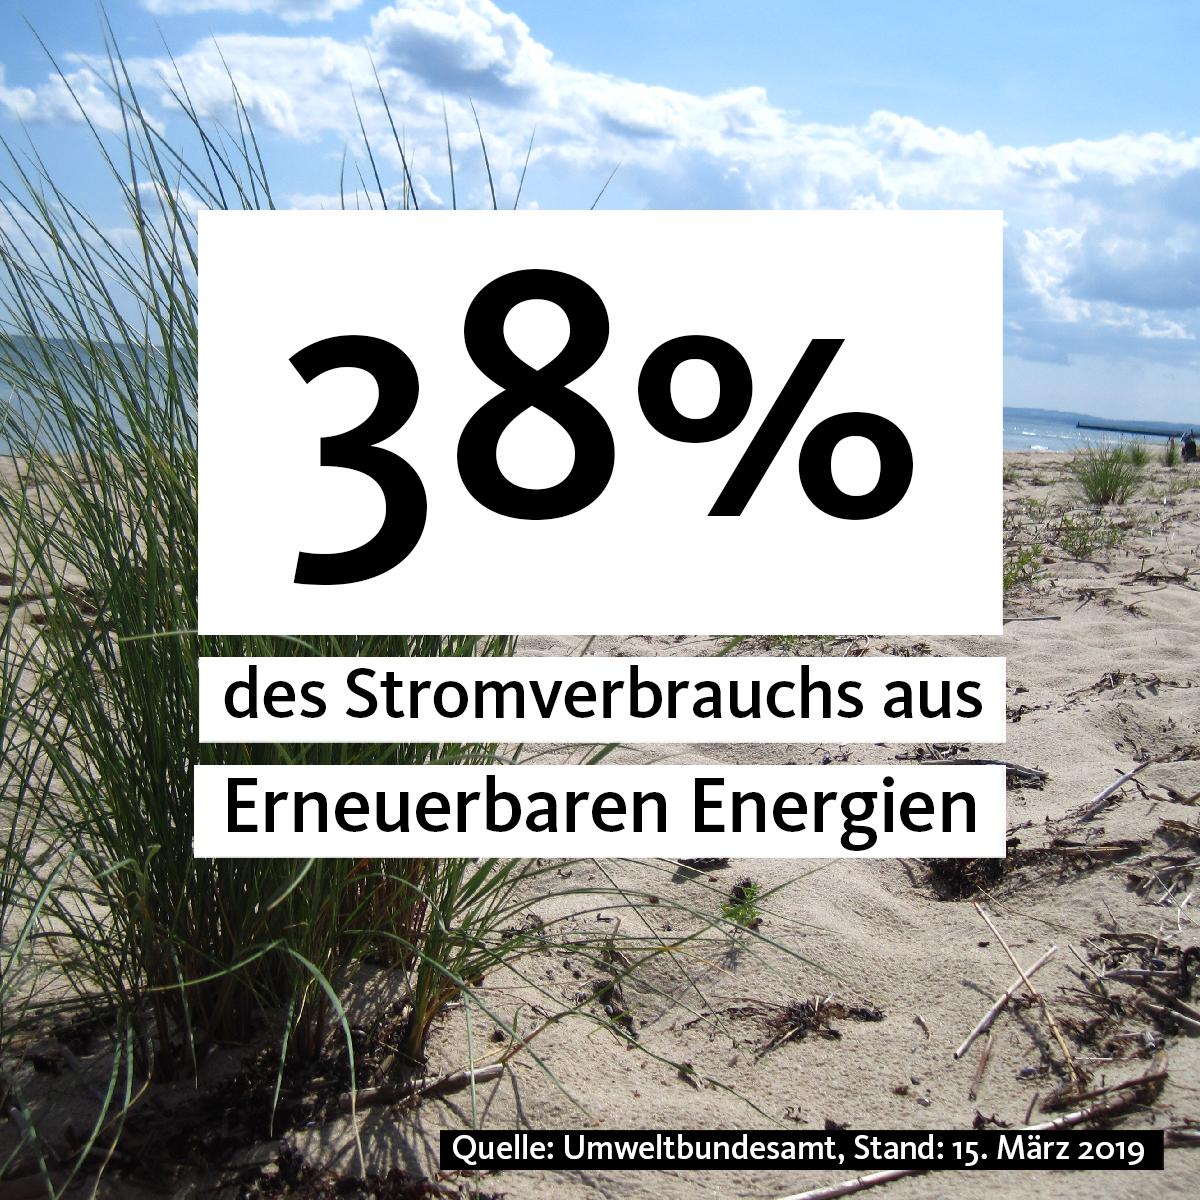 38% des Stromverbrauchs aus Erneuerbaren Energien